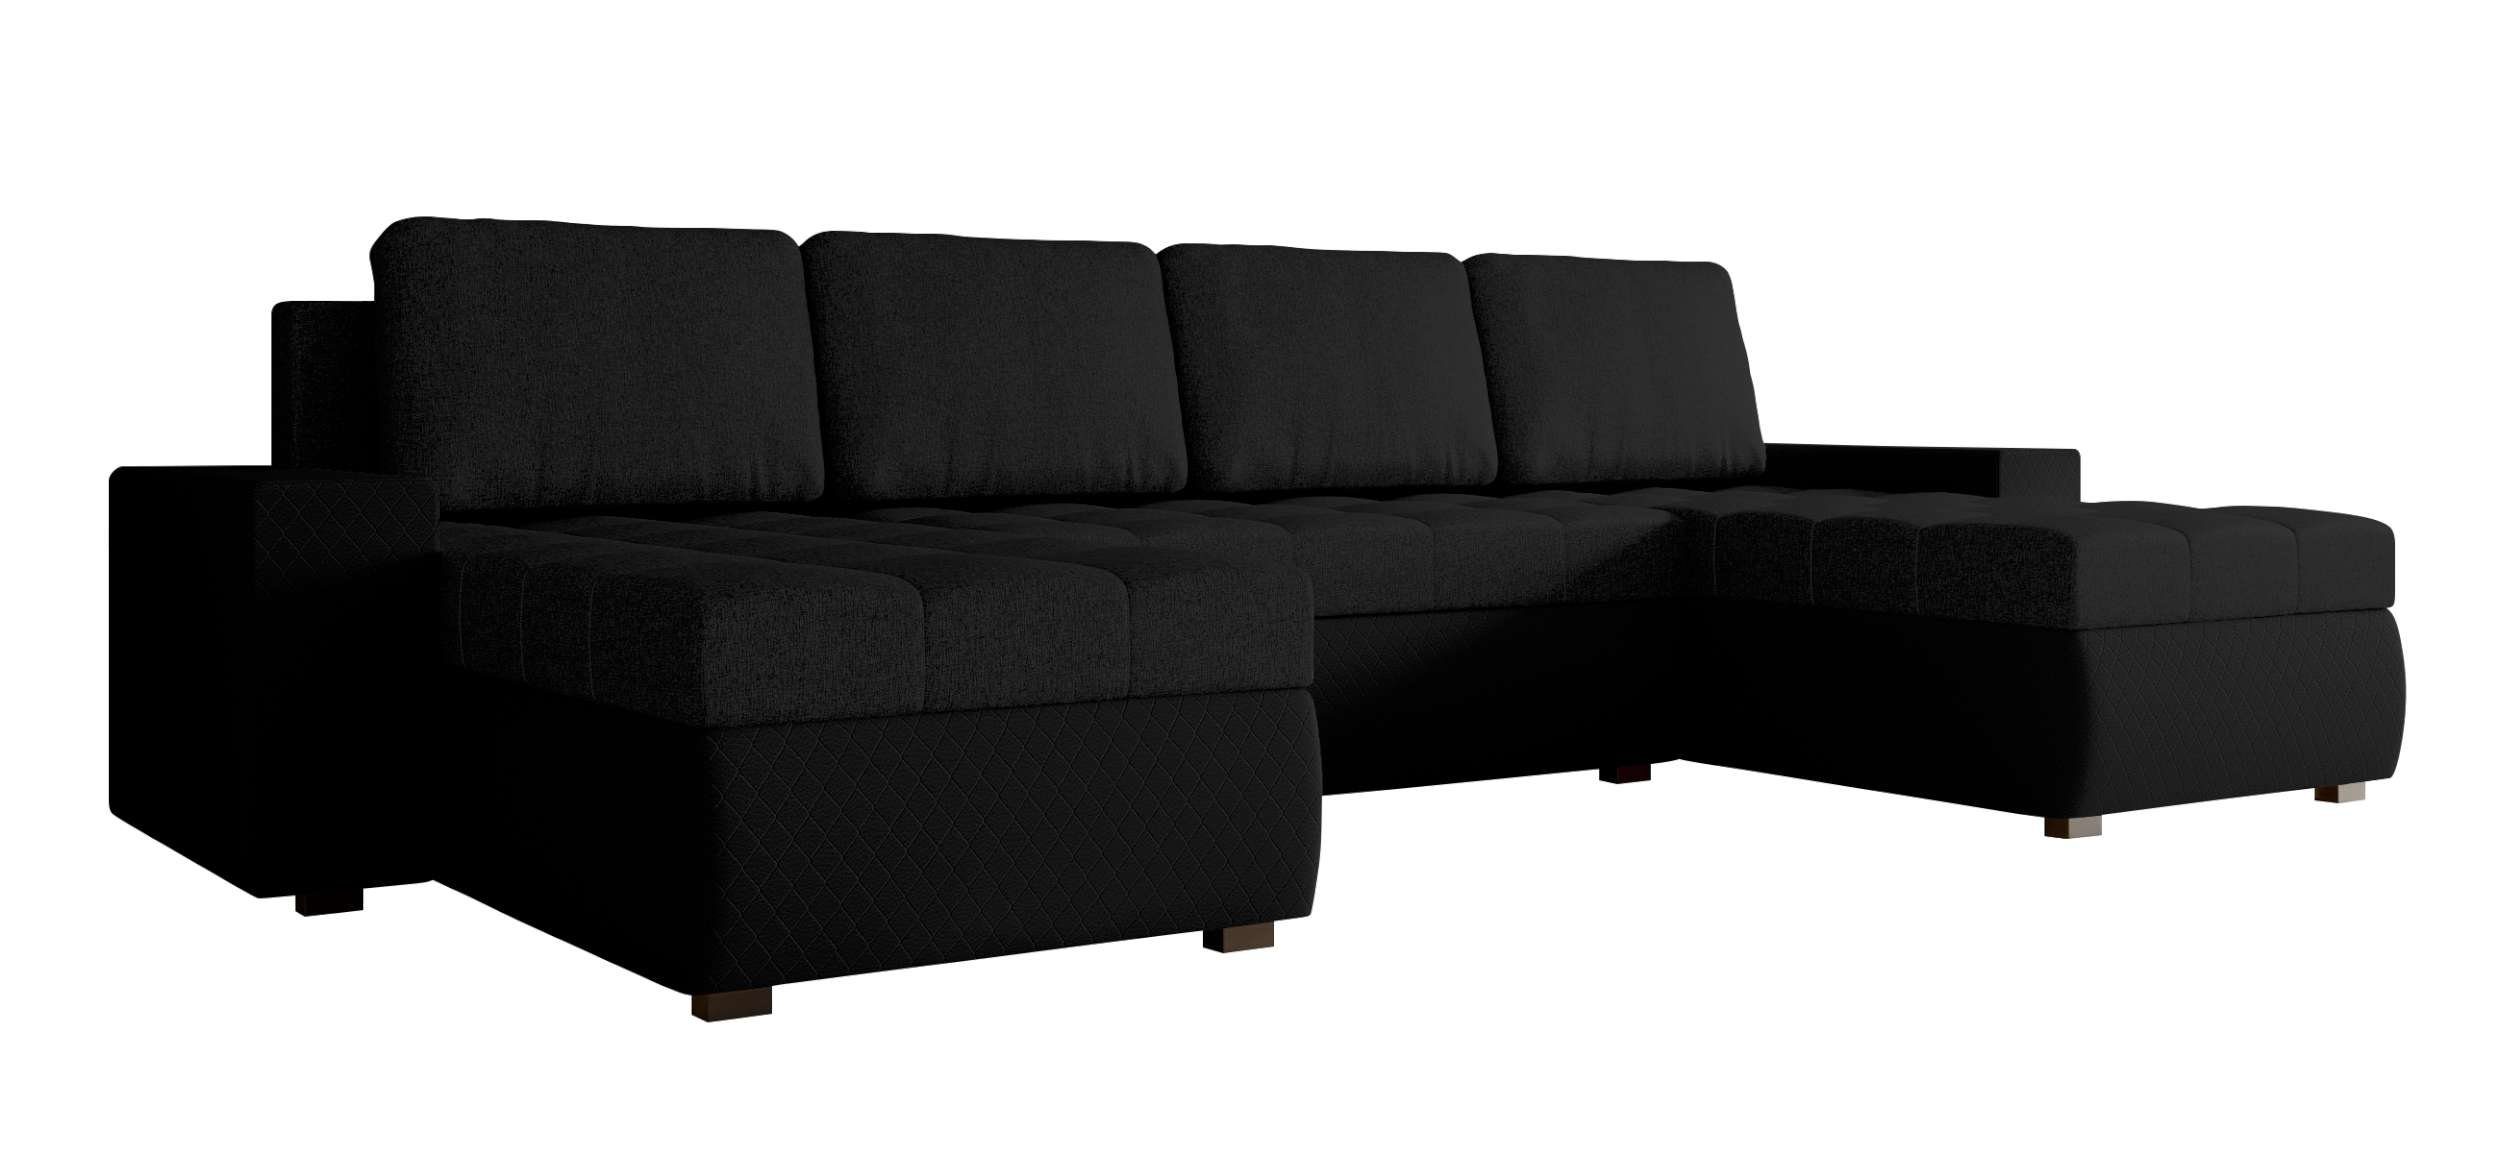 Amelia, Bettfunktion, Bettkasten, Sofa, Eckcouch, U-Form, Stylefy Design mit mit Modern Sitzkomfort, Wohnlandschaft